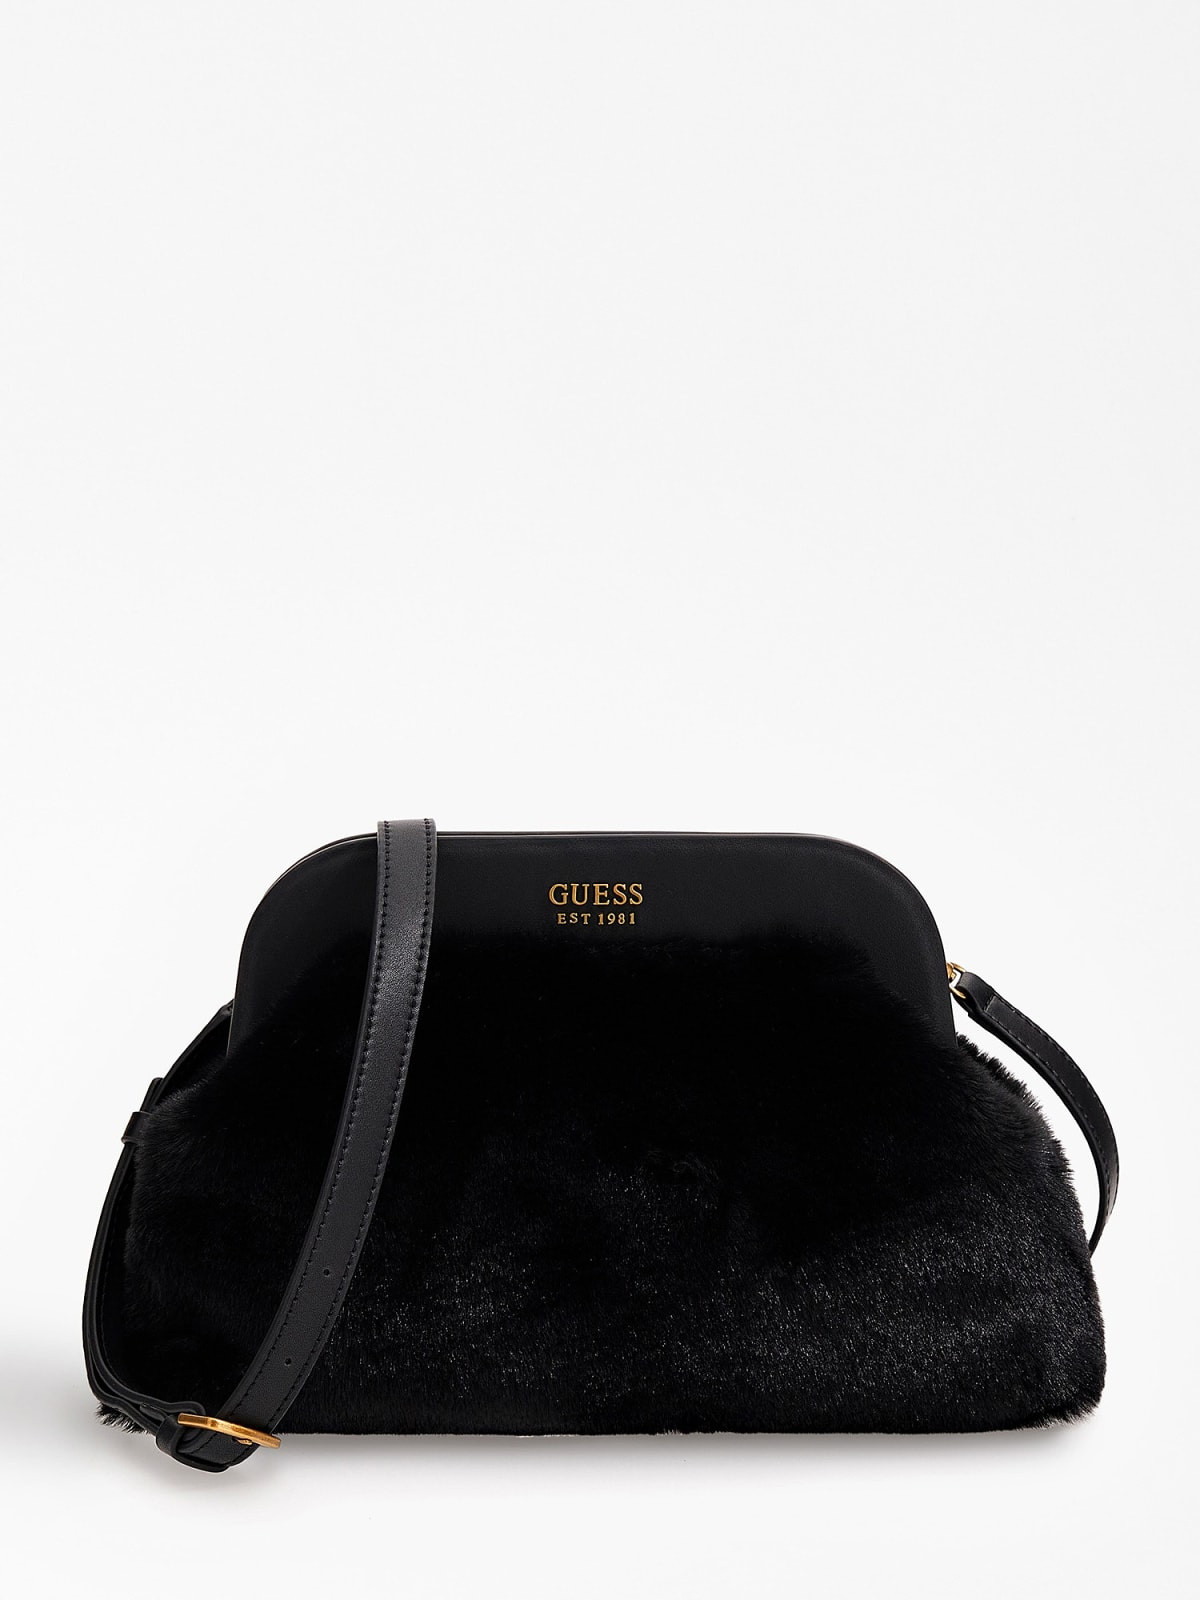 Clutch bag with shoulder strap, Black, large image number 0